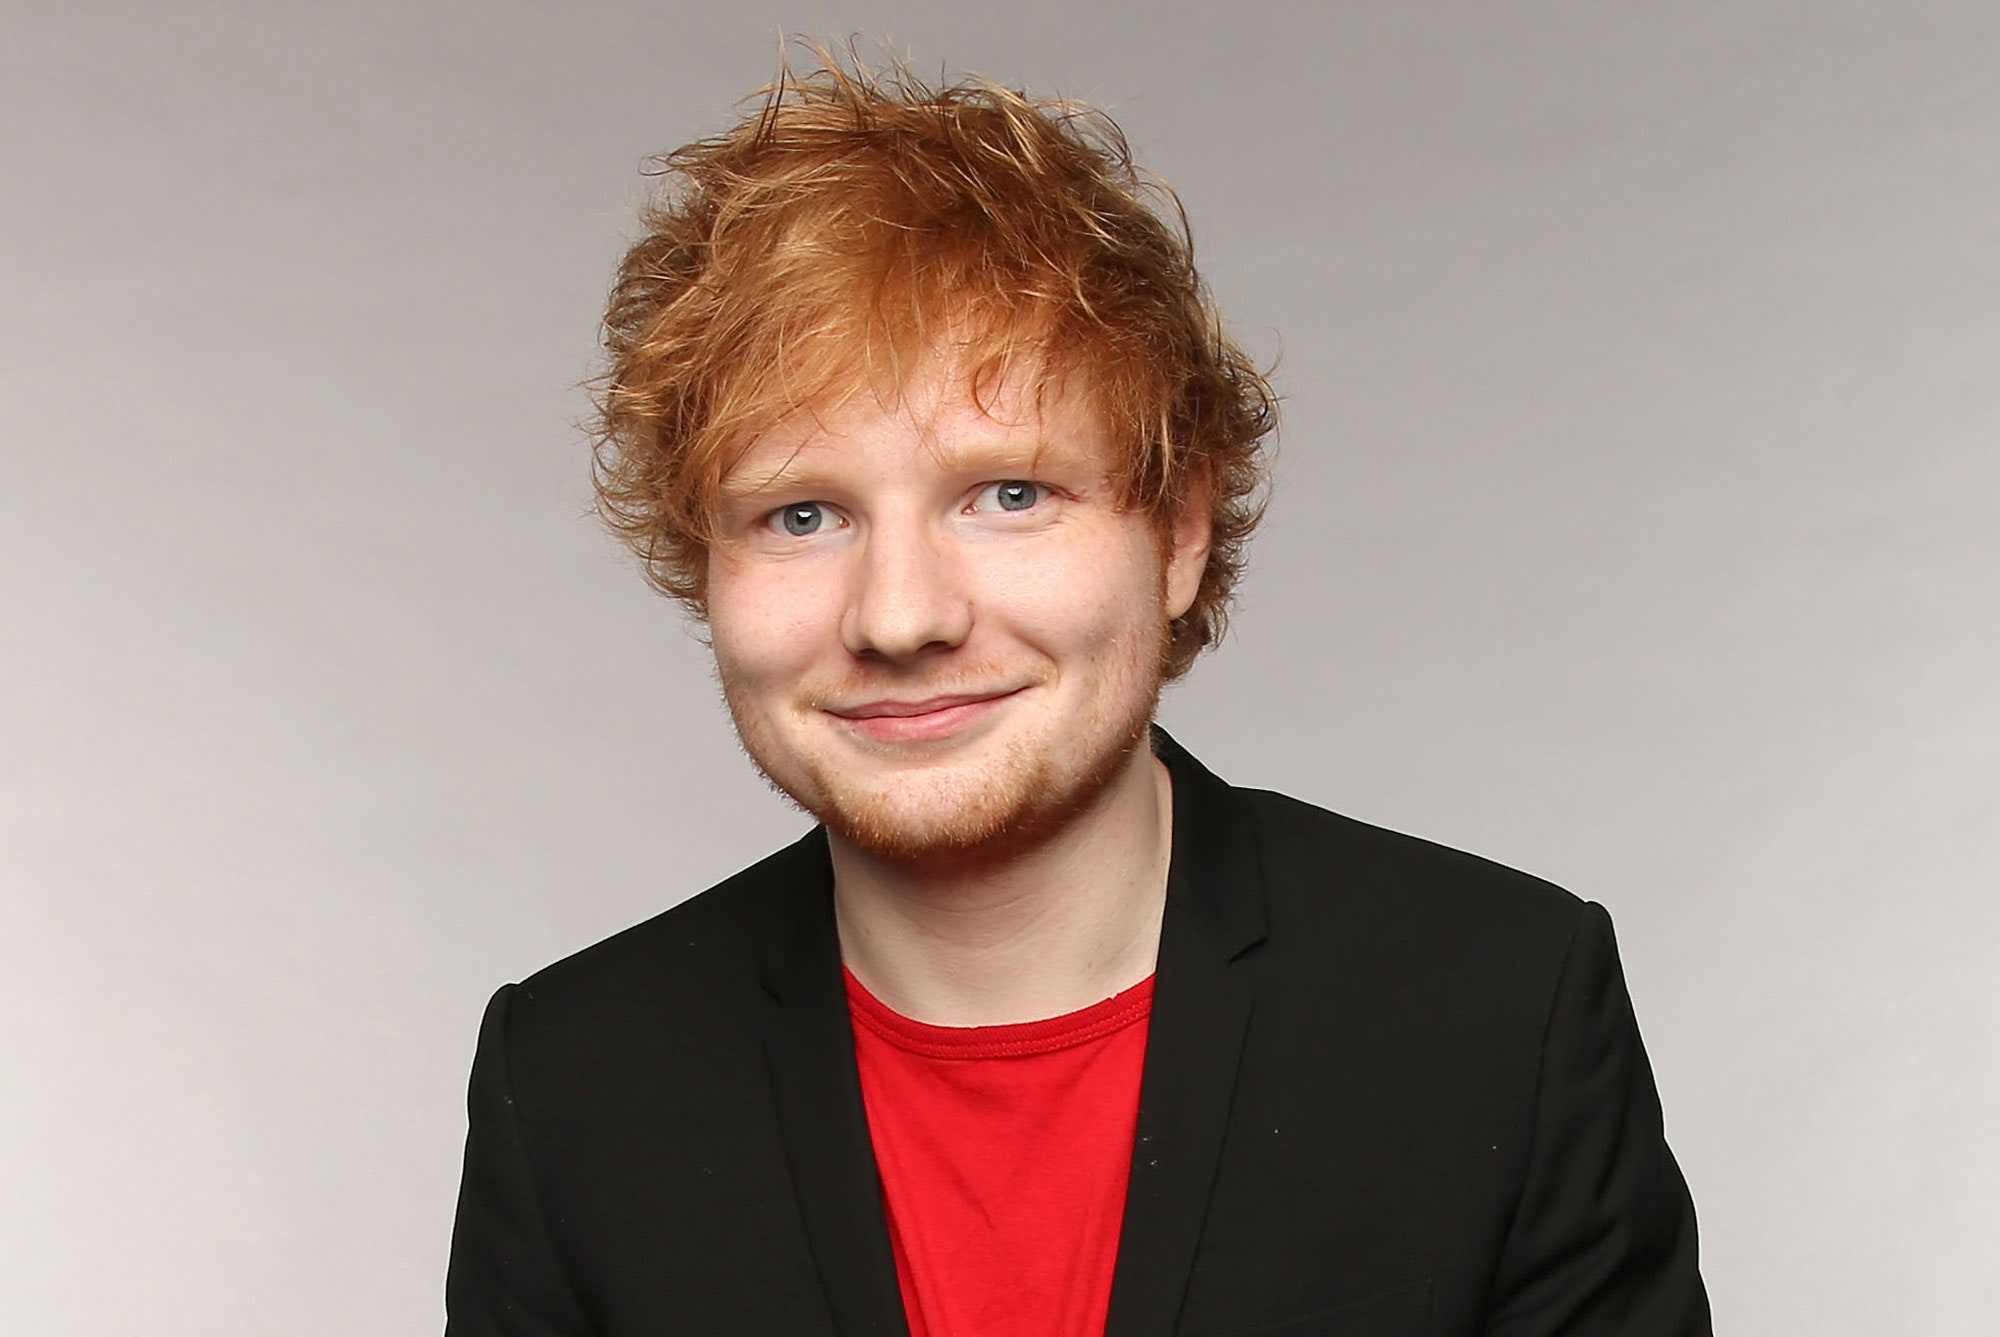 Ed Sheeran, cantante di "Perfect" e "Shape of you": vita, carriera,  curiosità